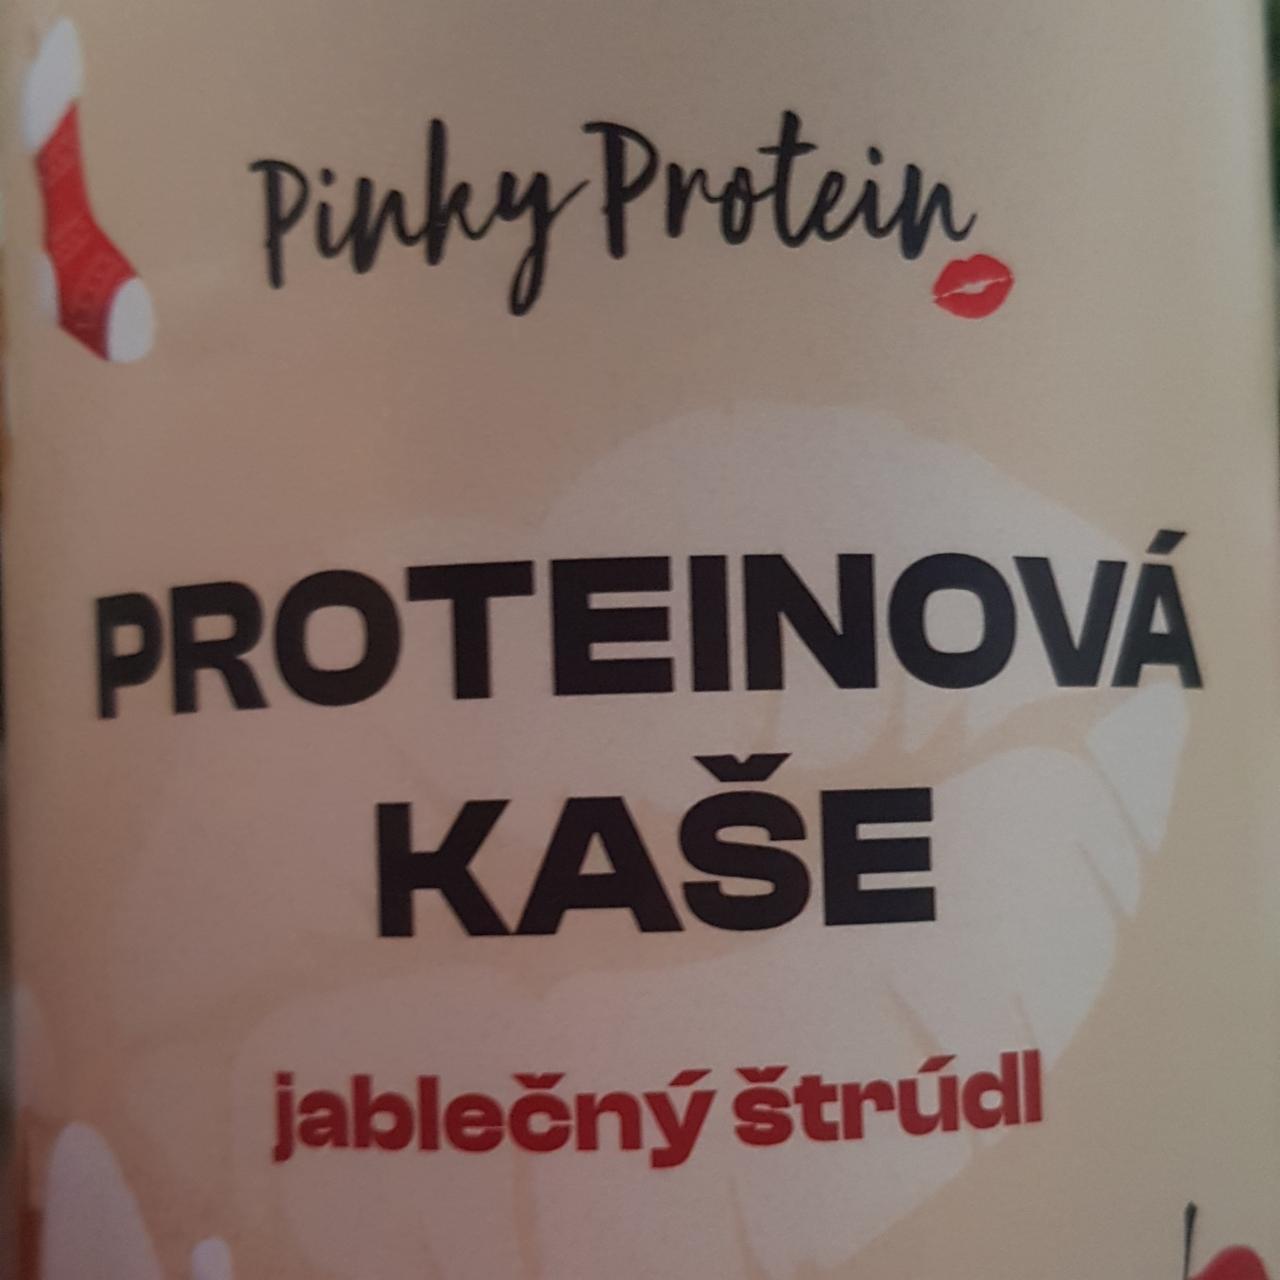 Fotografie - Proteinová kaše Jablečný štrúdl Pinky protein